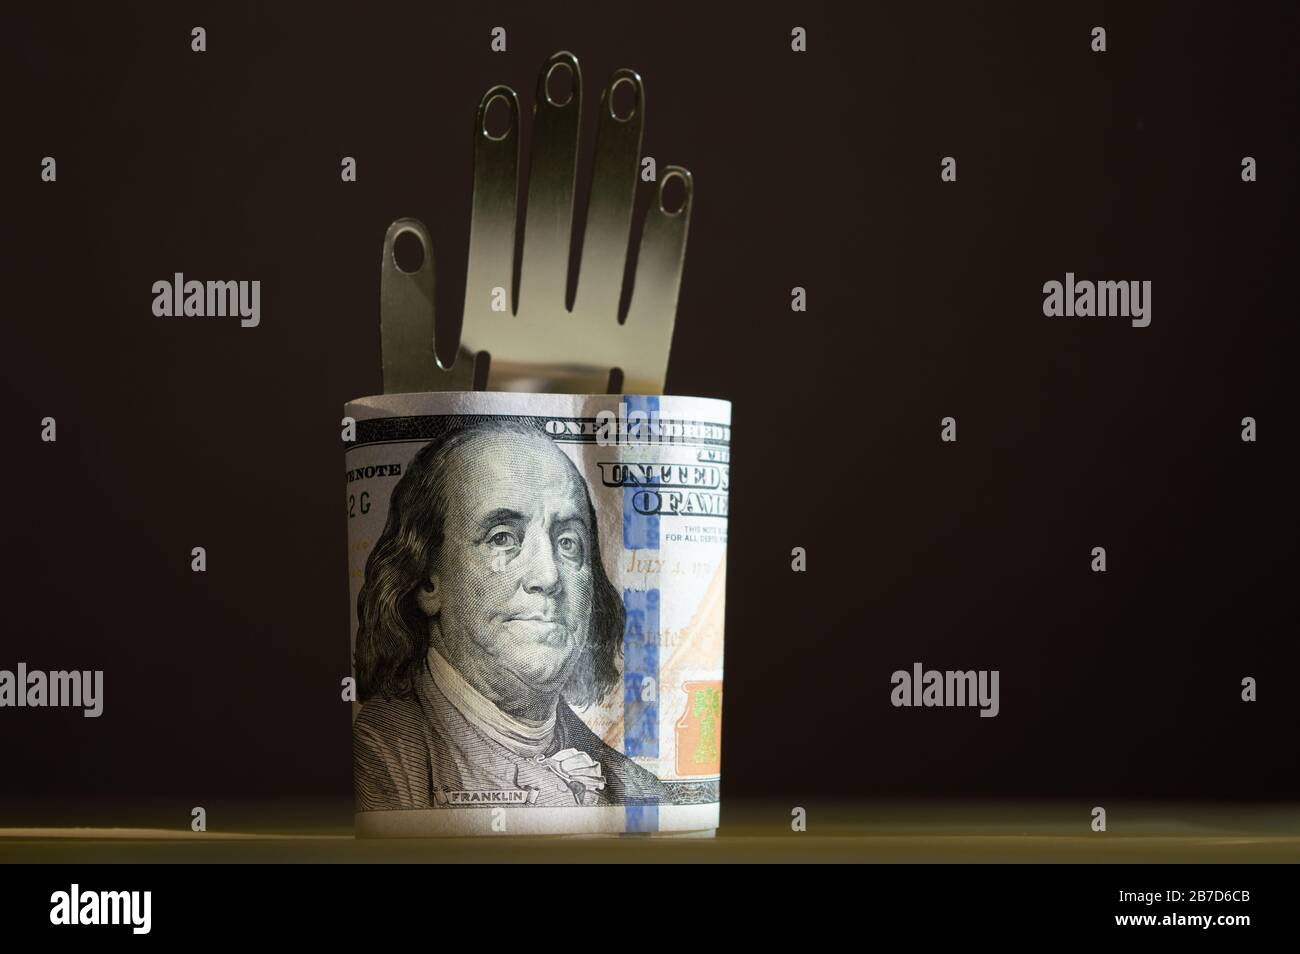 Dollars américains, tenant à la main de métal sur le fond sombre. Photo conceptuelle, design minimaliste Banque D'Images